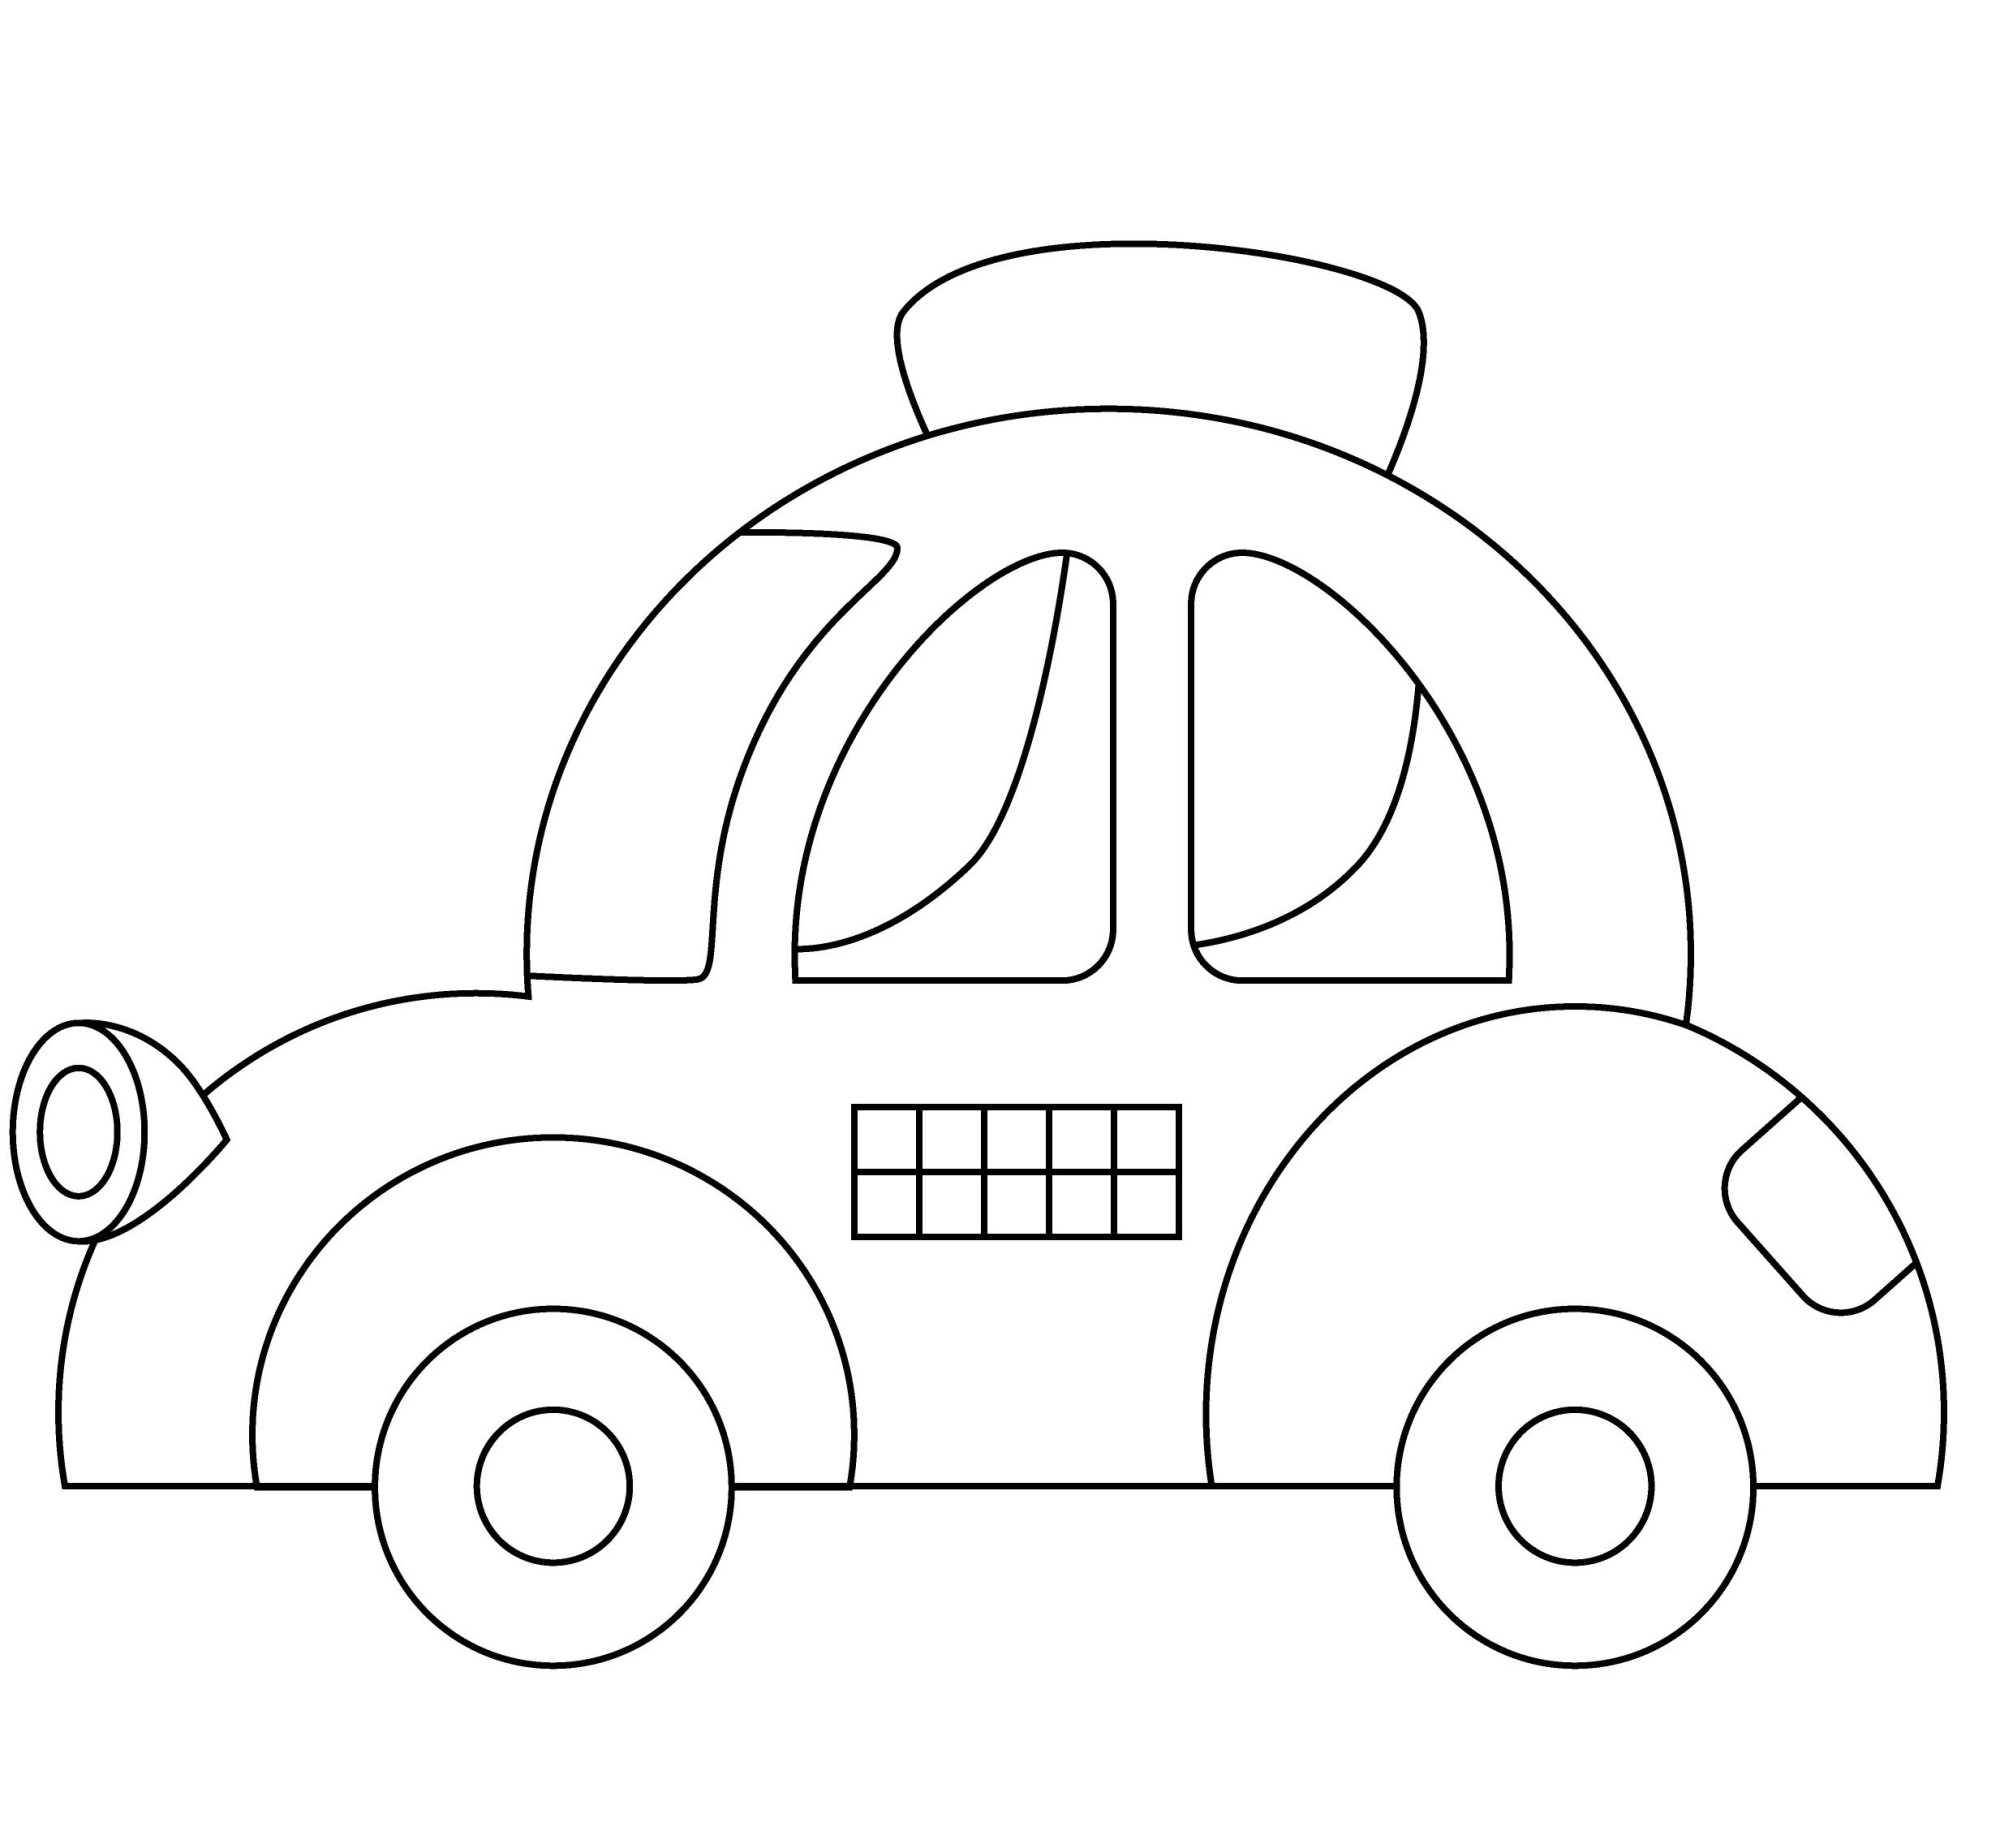 Раскраска для детей: симпатичная машинка такси